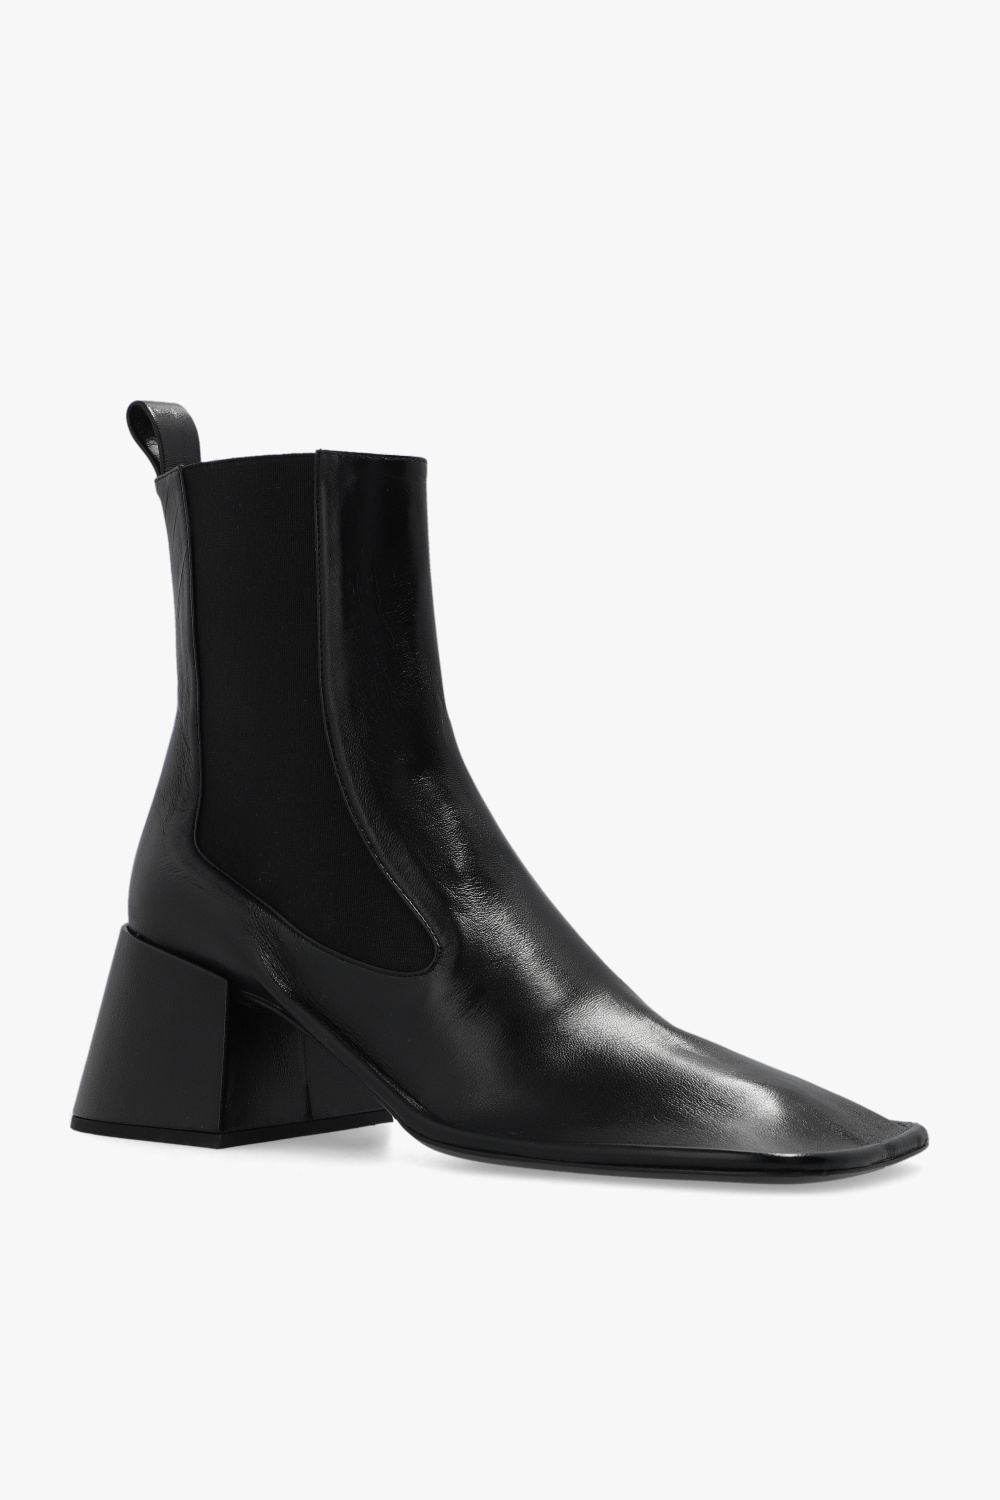 JIL SANDER ‘Nikki’ heeled ankle boots